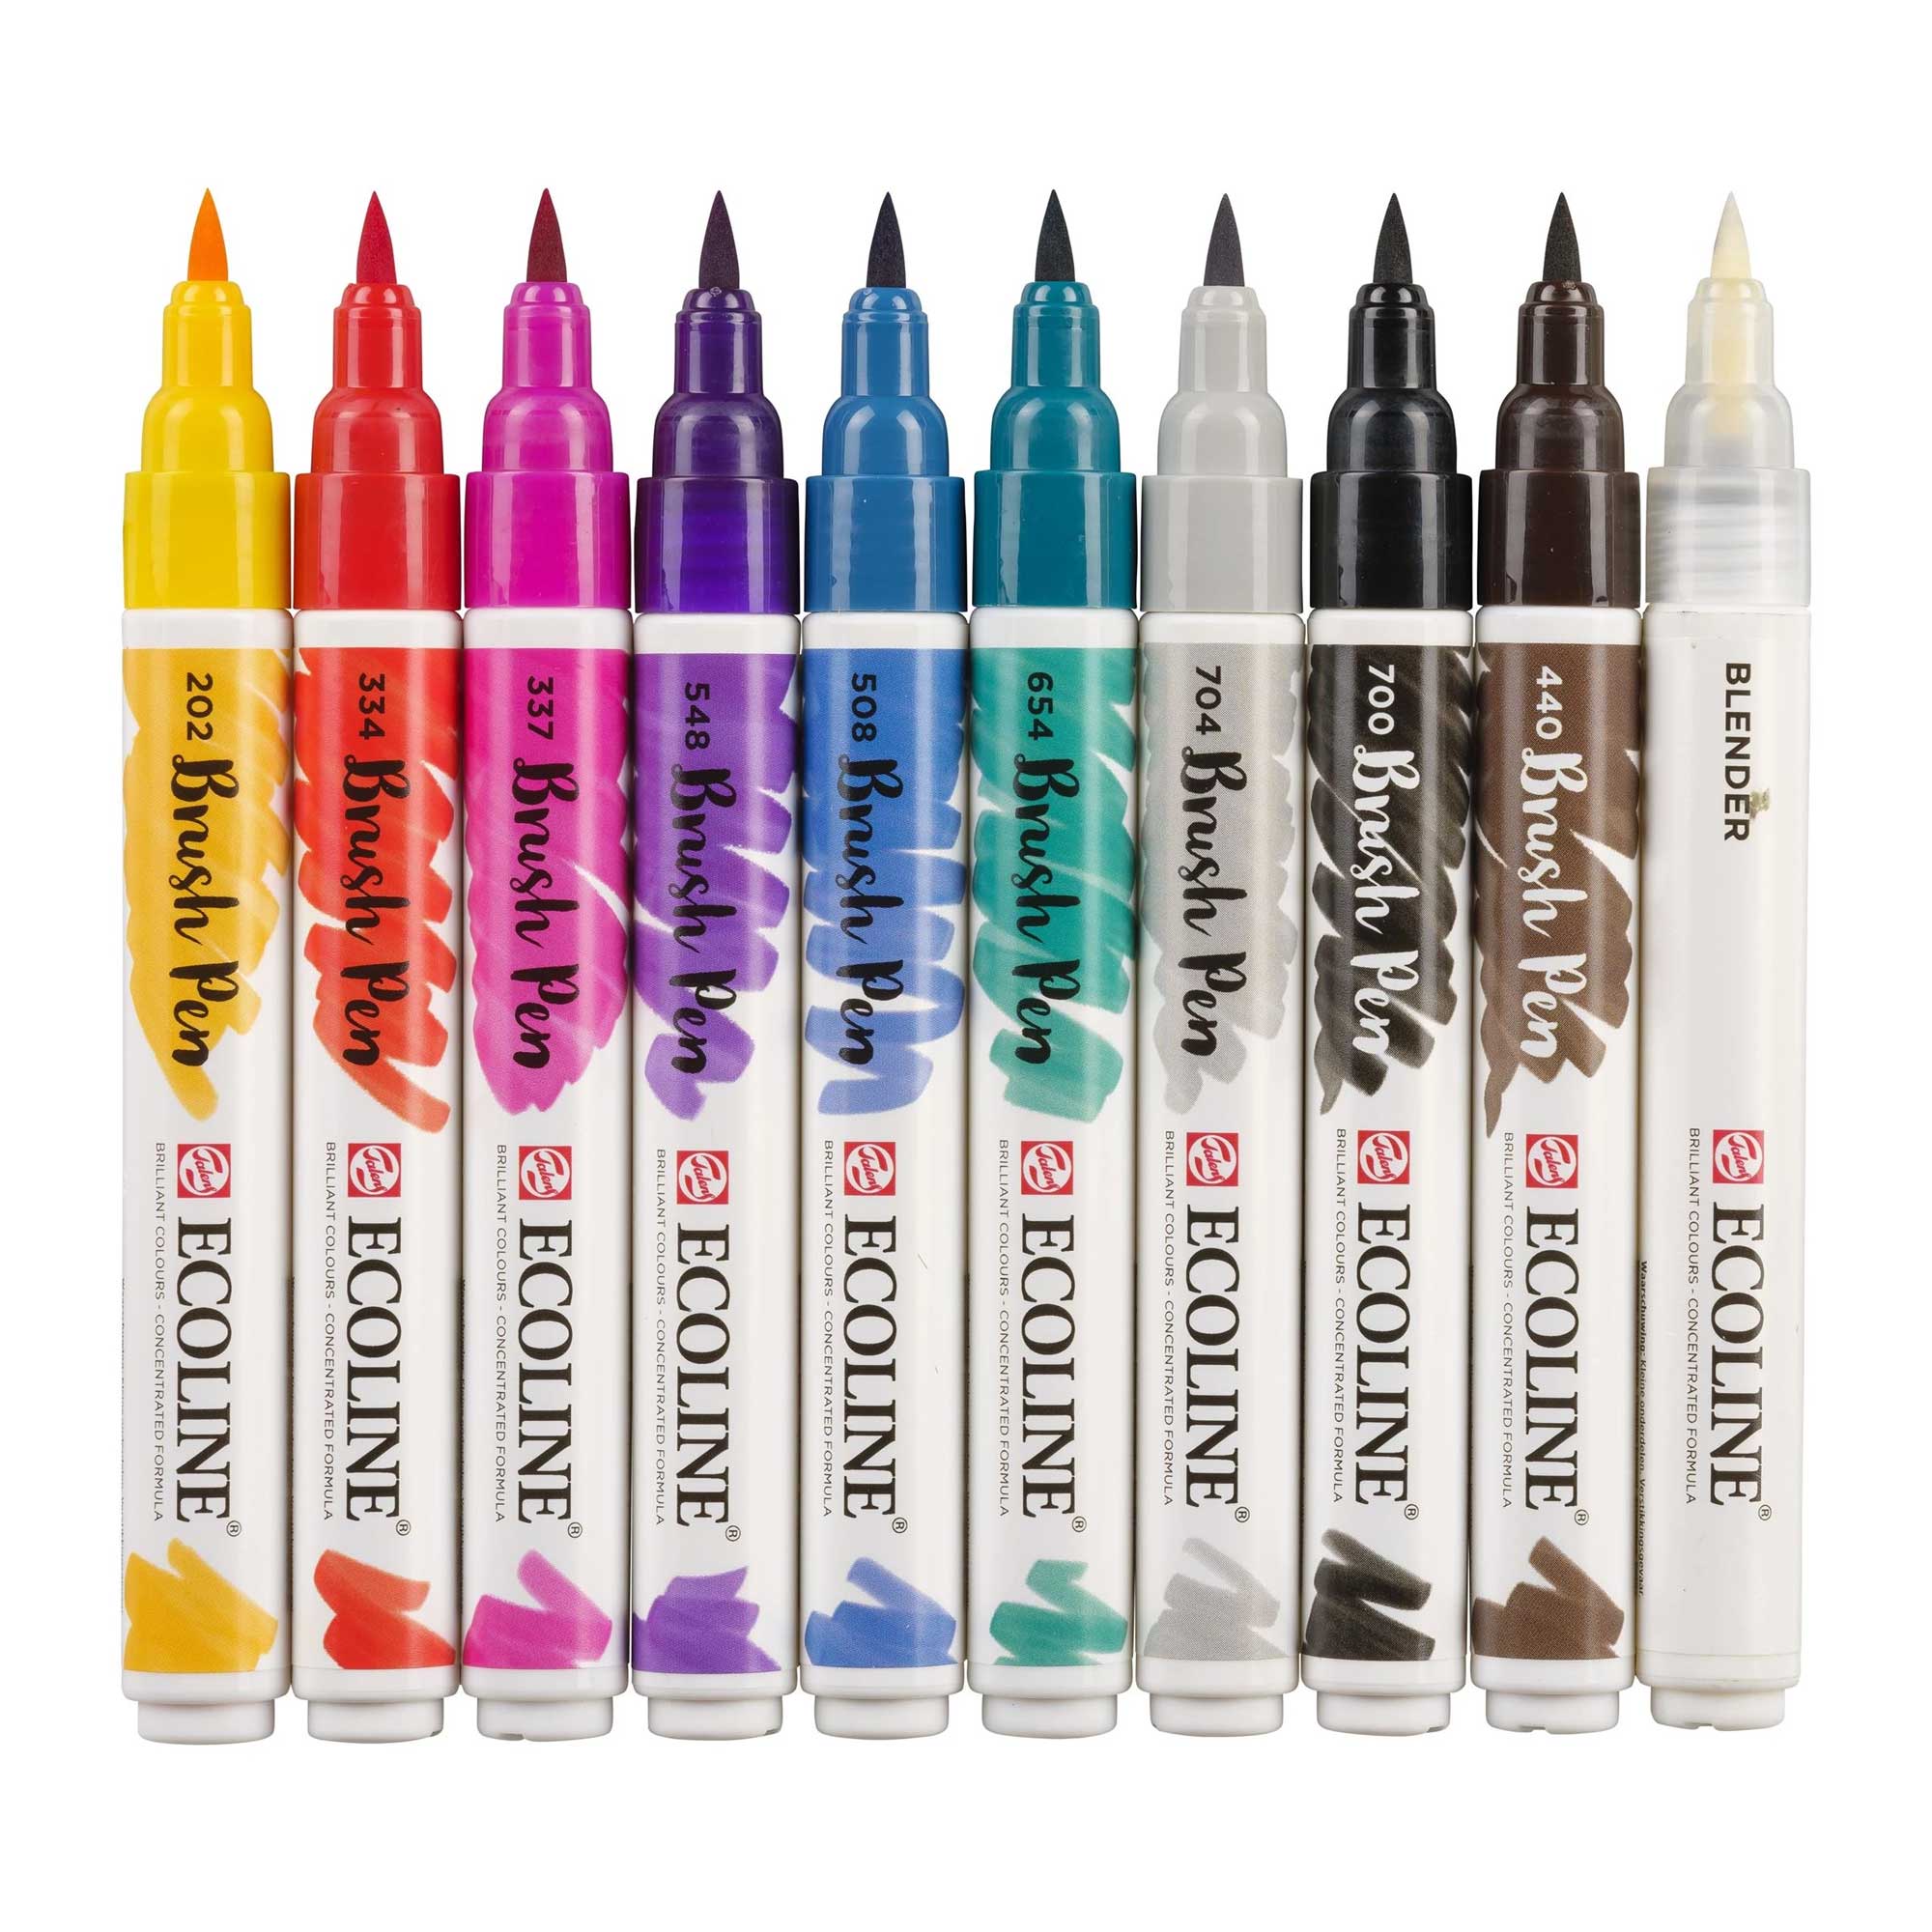 5-Color Autumn Ecoline Brush Pen Set